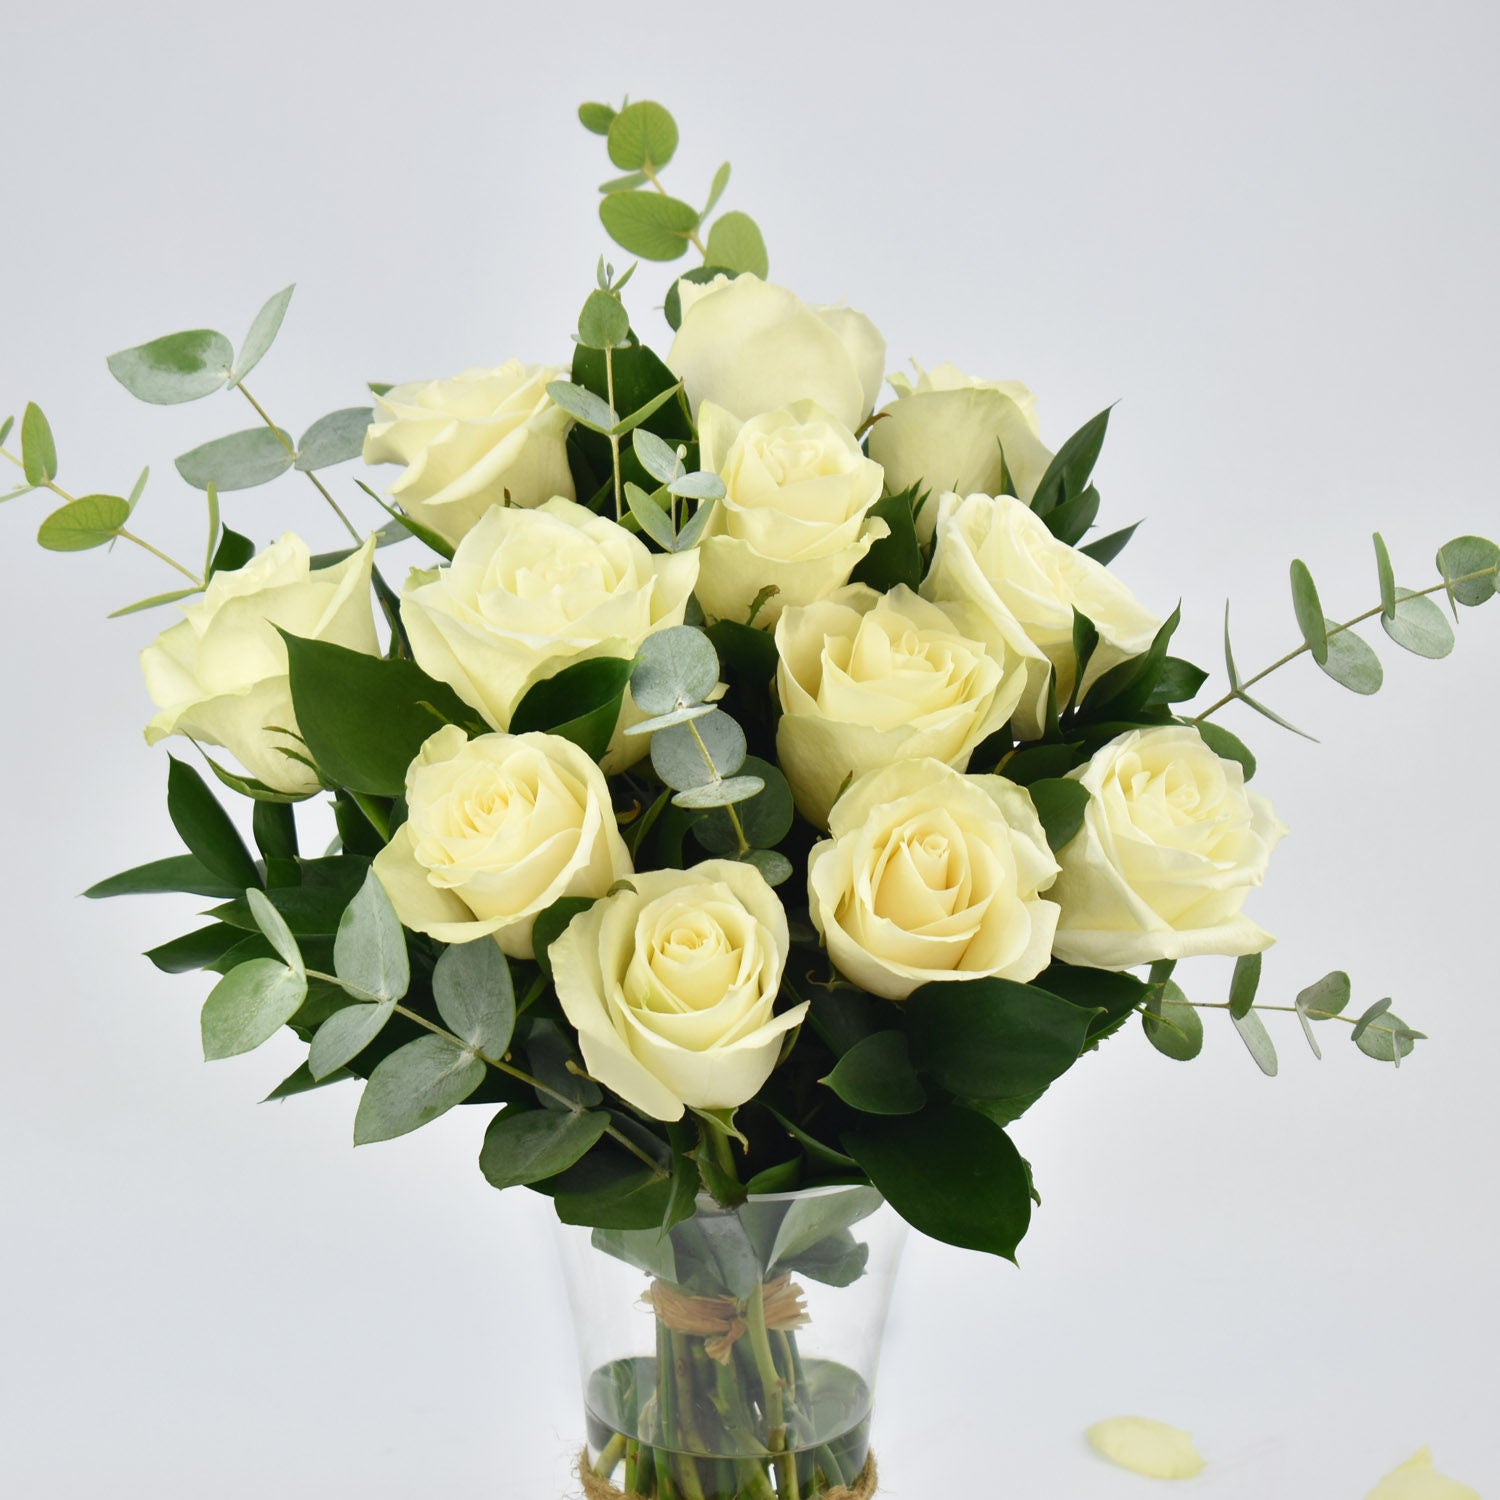 Vase Of Elegant White Roses